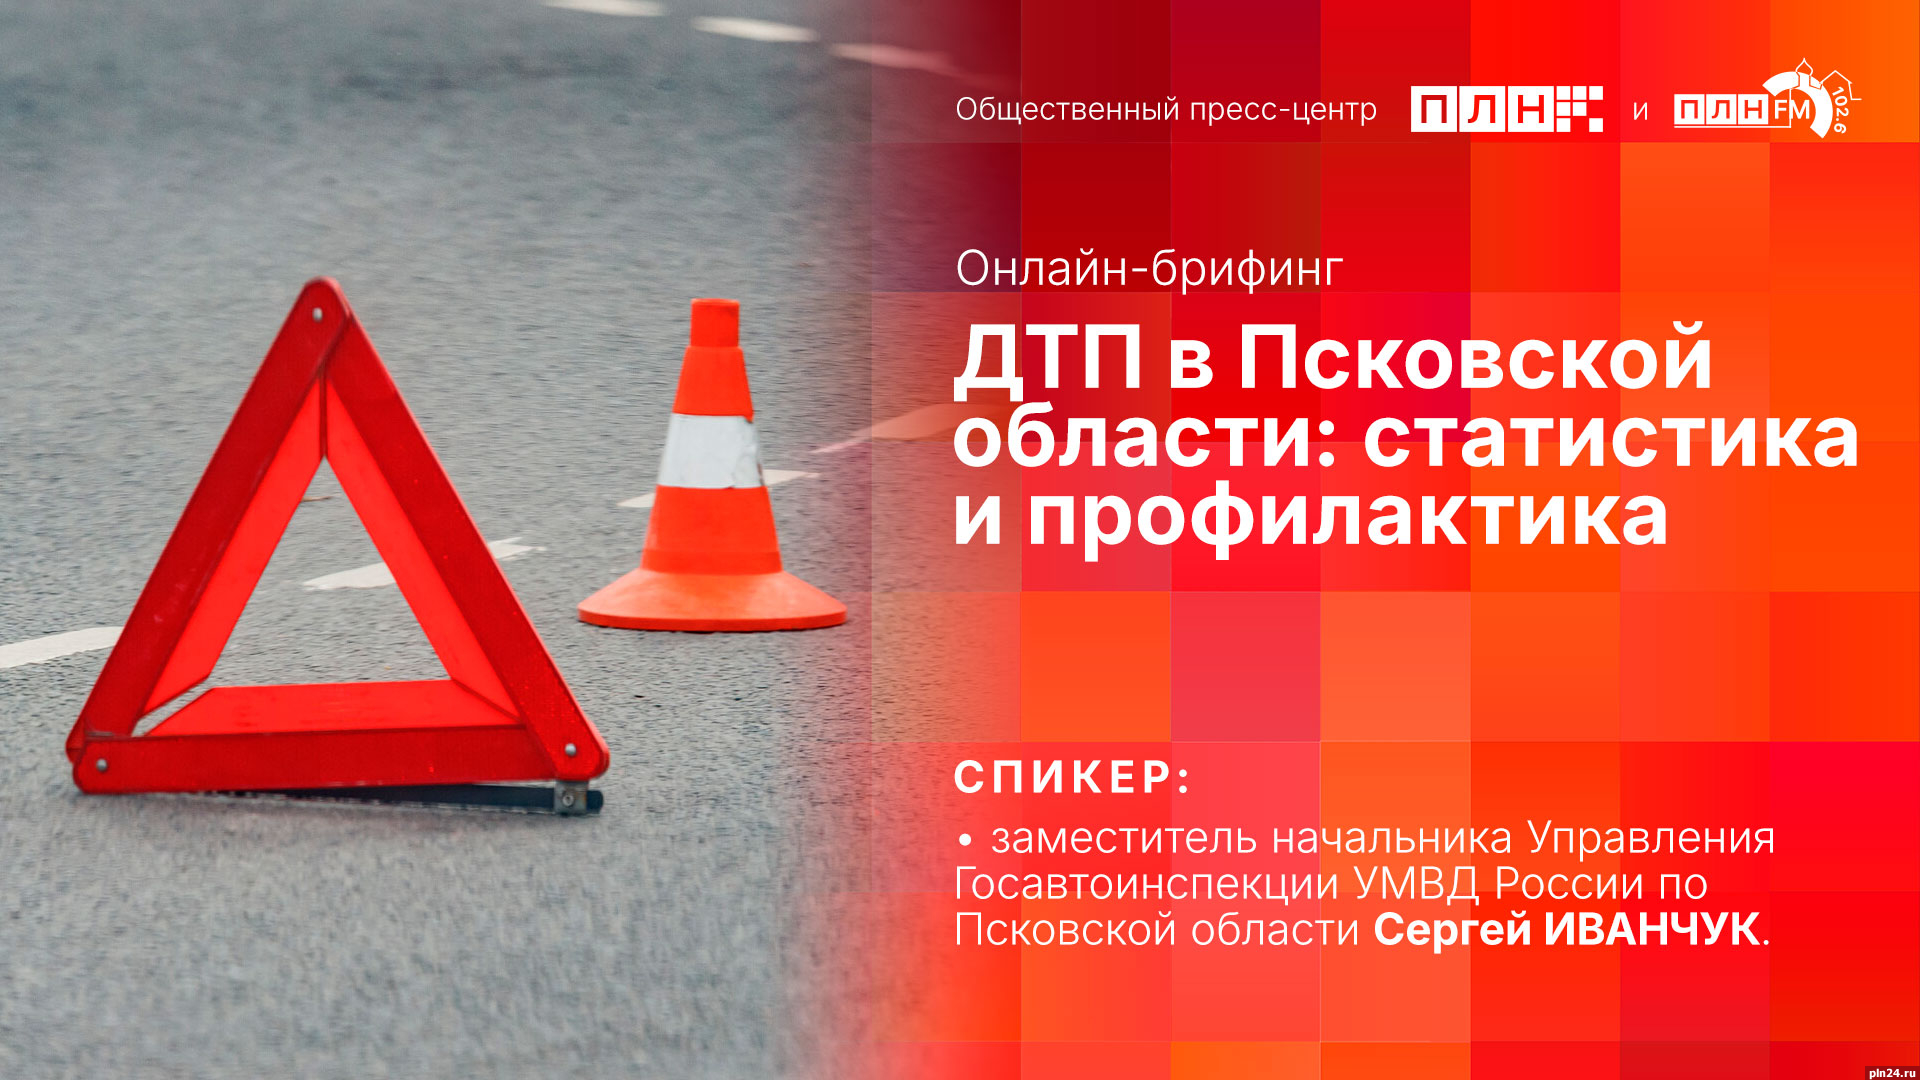 Начинается видеотрансляция онлайн-брифинга о ДТП в Псковской области